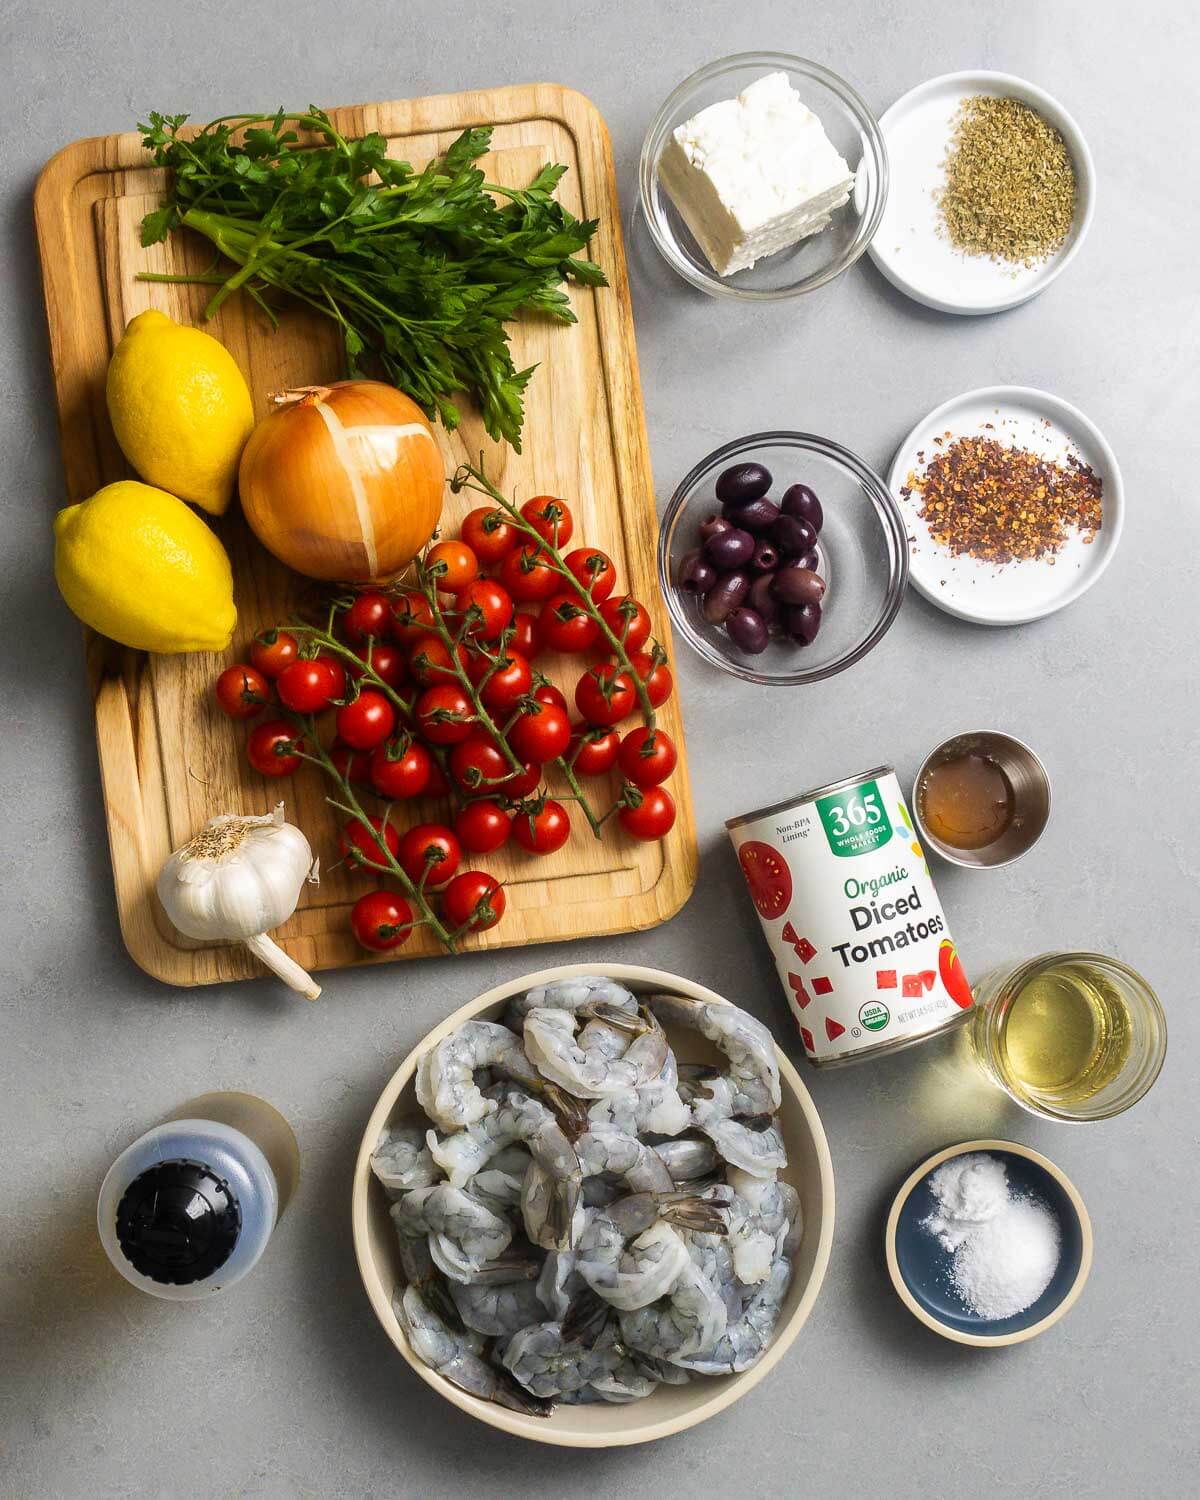 Ingredients shown: parsley, lemons, onion, cherry tomatoes, garlic, feta, oregano, kalamata olives, chili flakes, olive oil, shrimp, canned tomatoes, honey, wine, and baking soda.